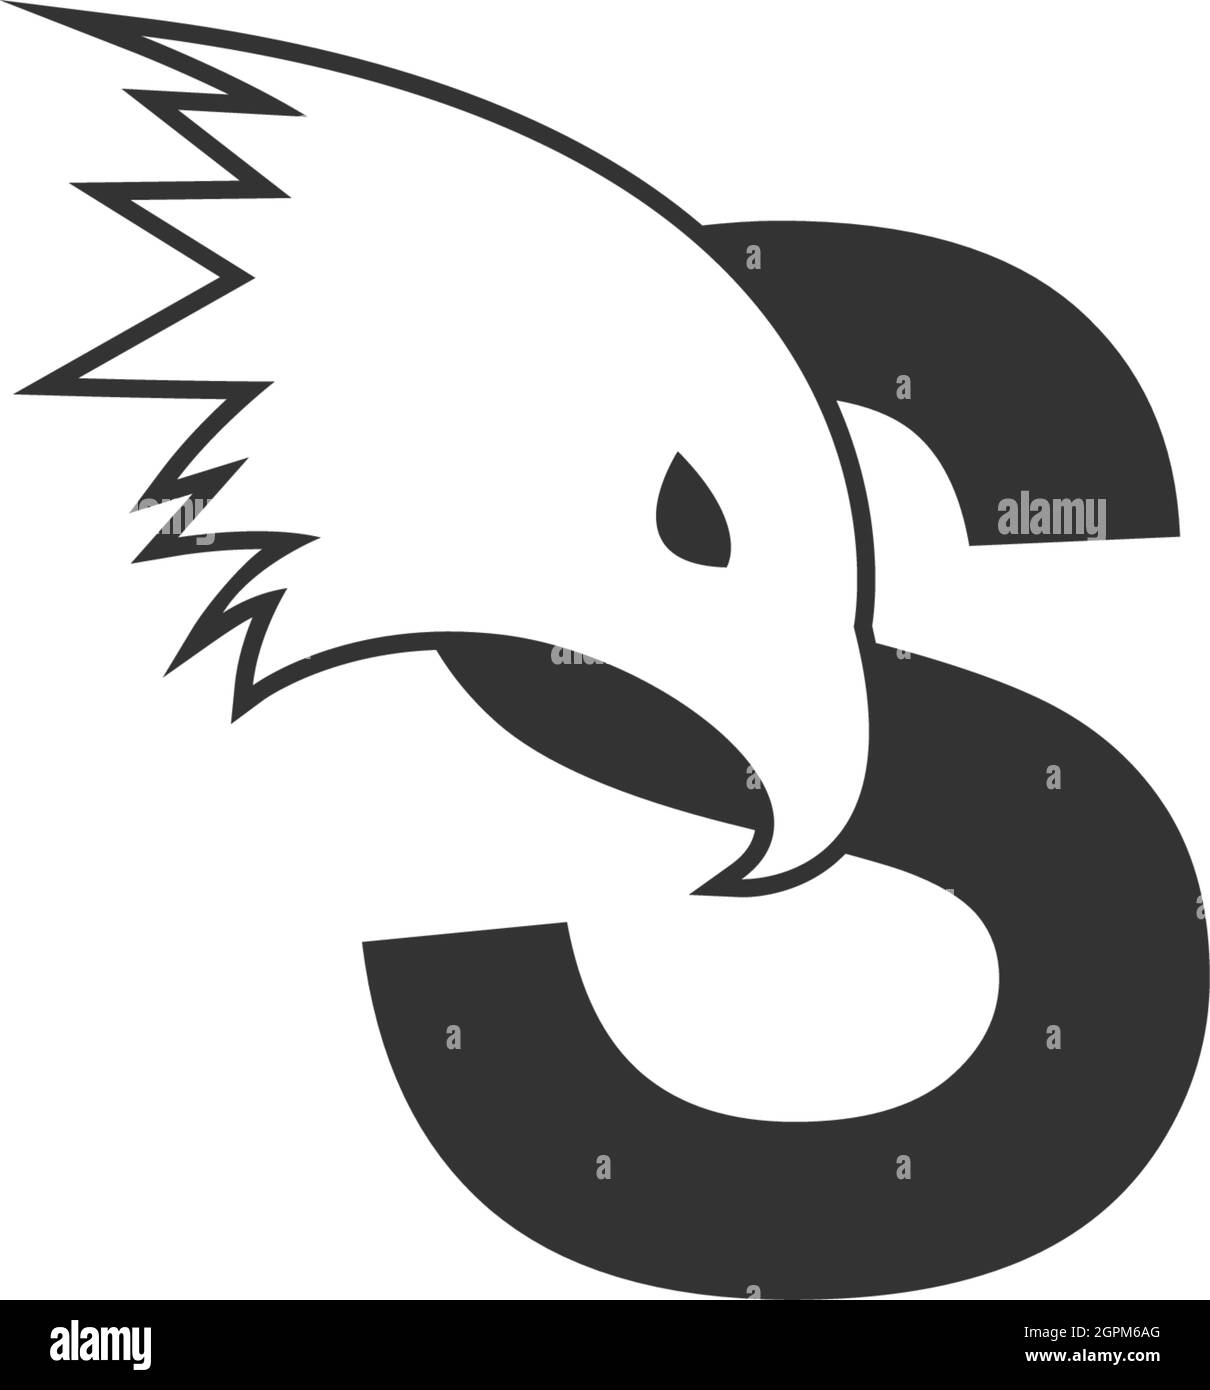 Letter S logo icon with falcon head design symbol template Stock Vector